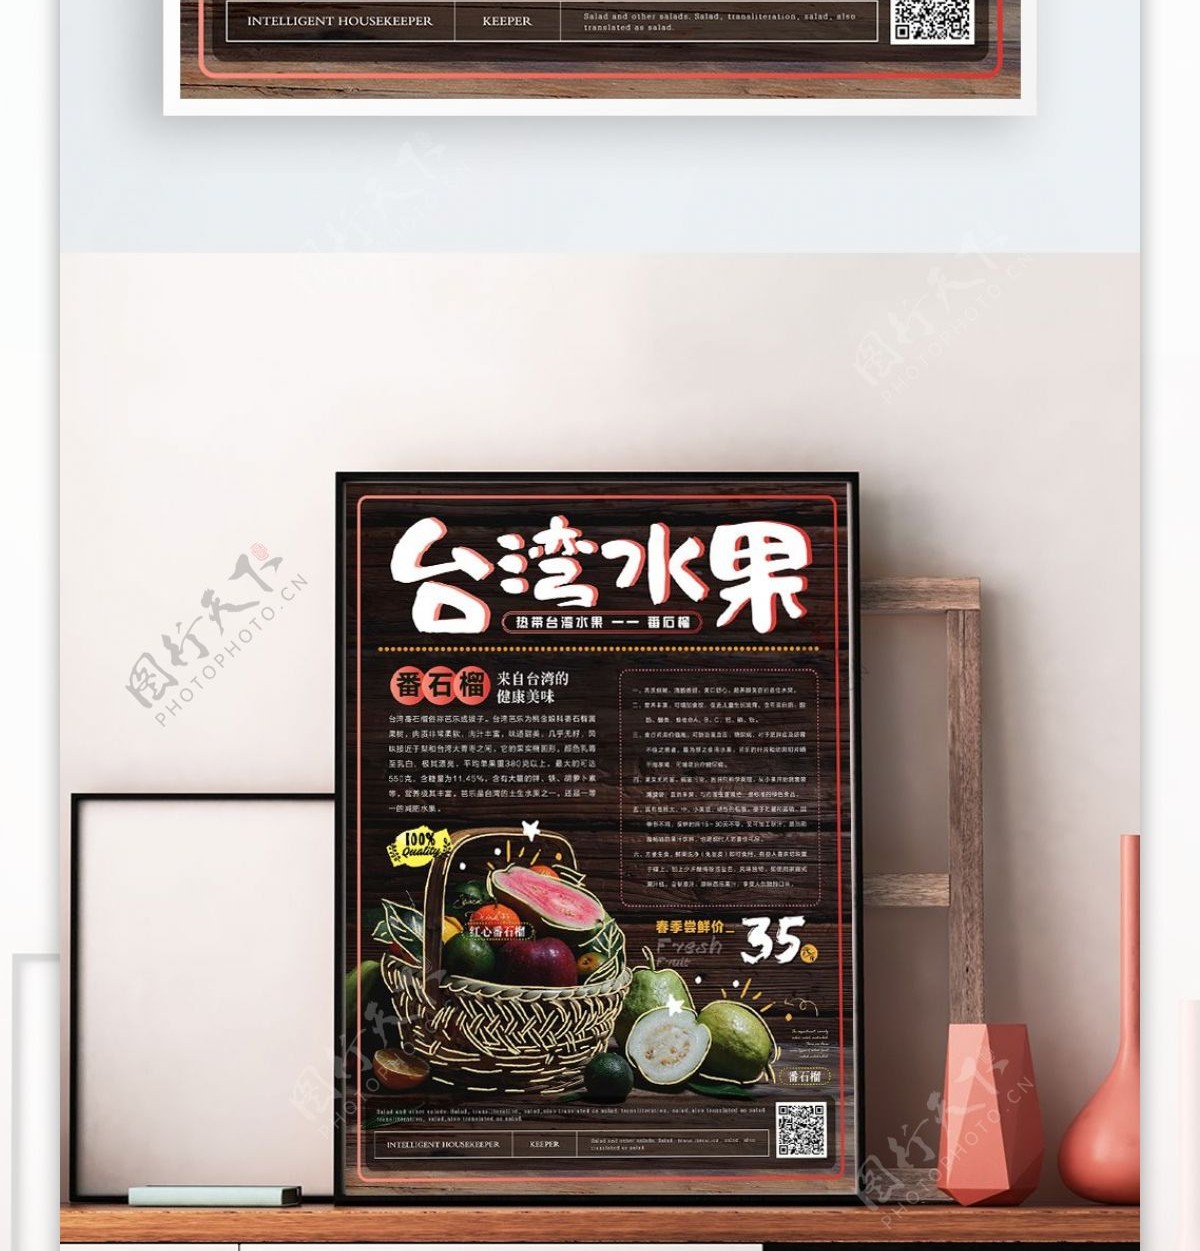 简约创意手绘描边台湾美食海报